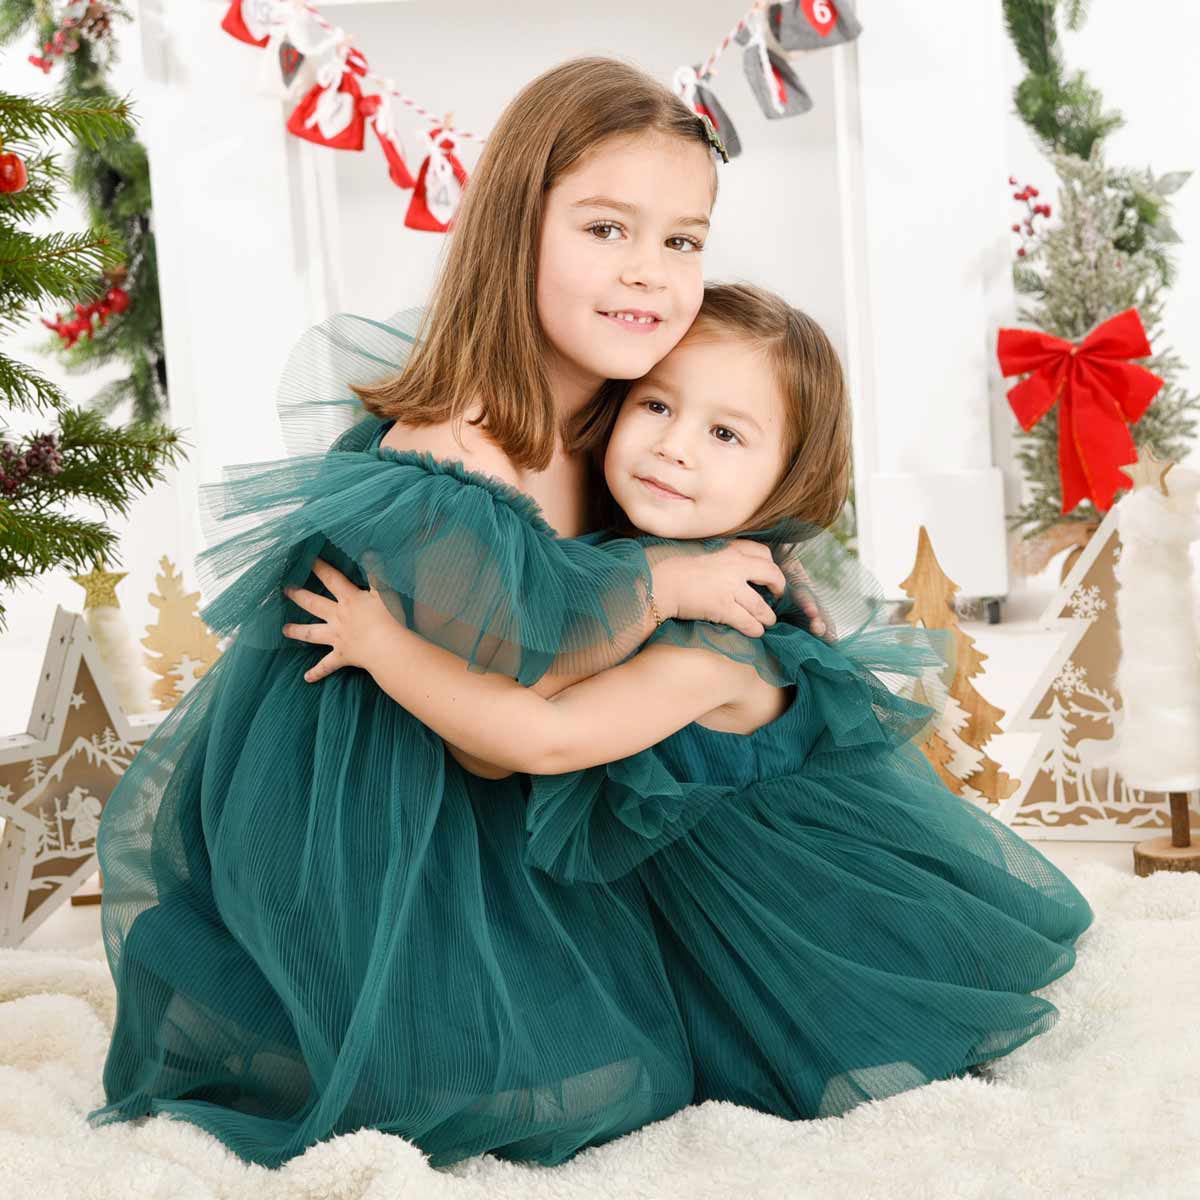 Weihnachts-Fotoshooting-Zwei-Schwestern-in-gruenen-Kleidern-die-sich-umarmen